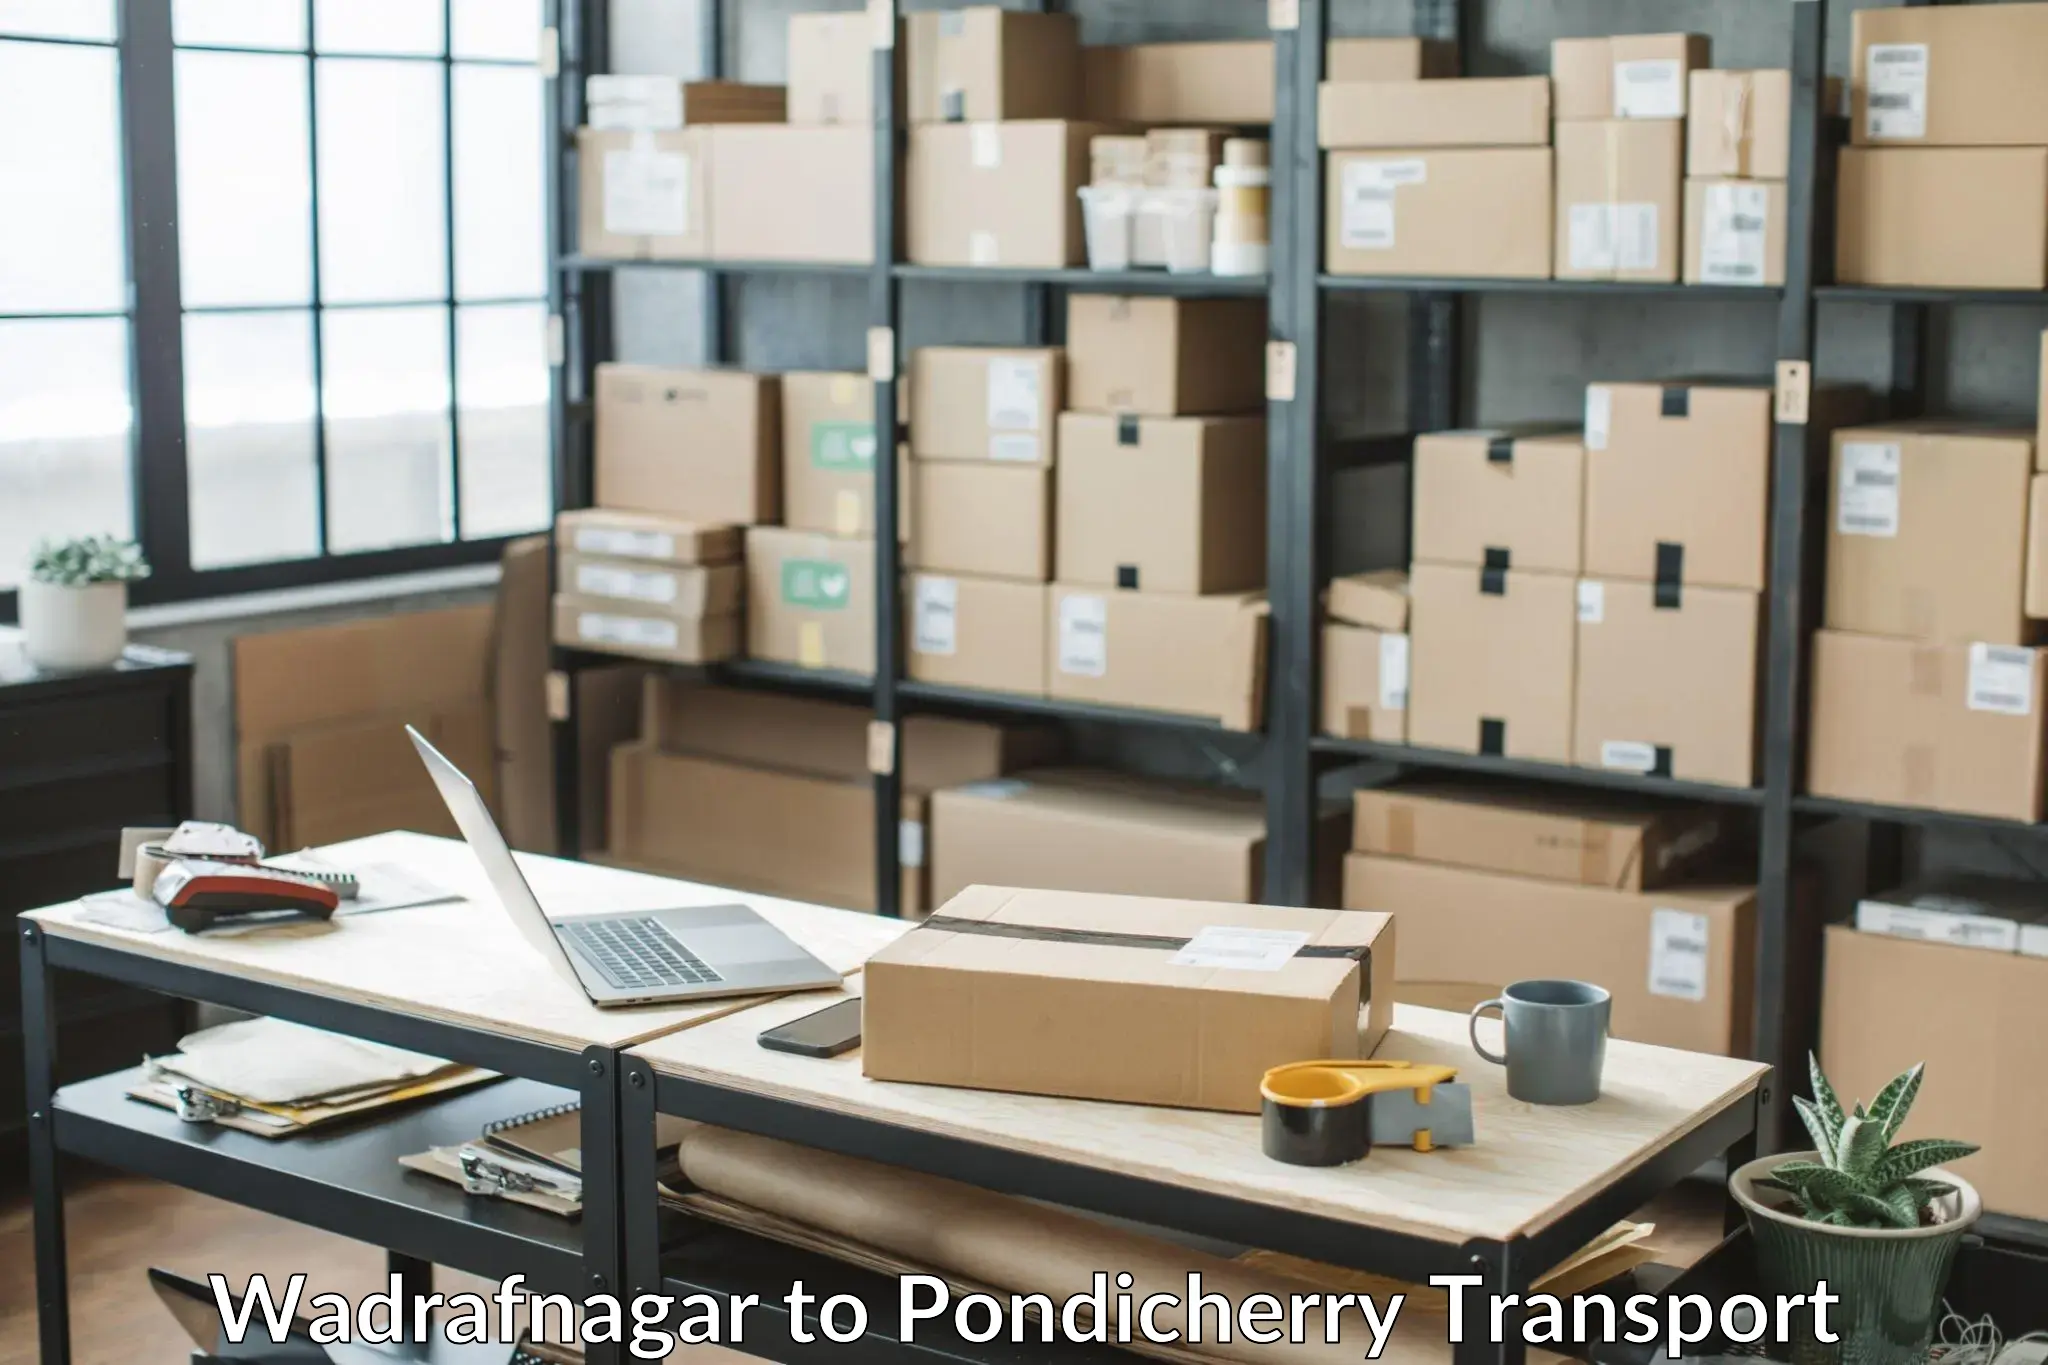 Vehicle parcel service Wadrafnagar to Pondicherry